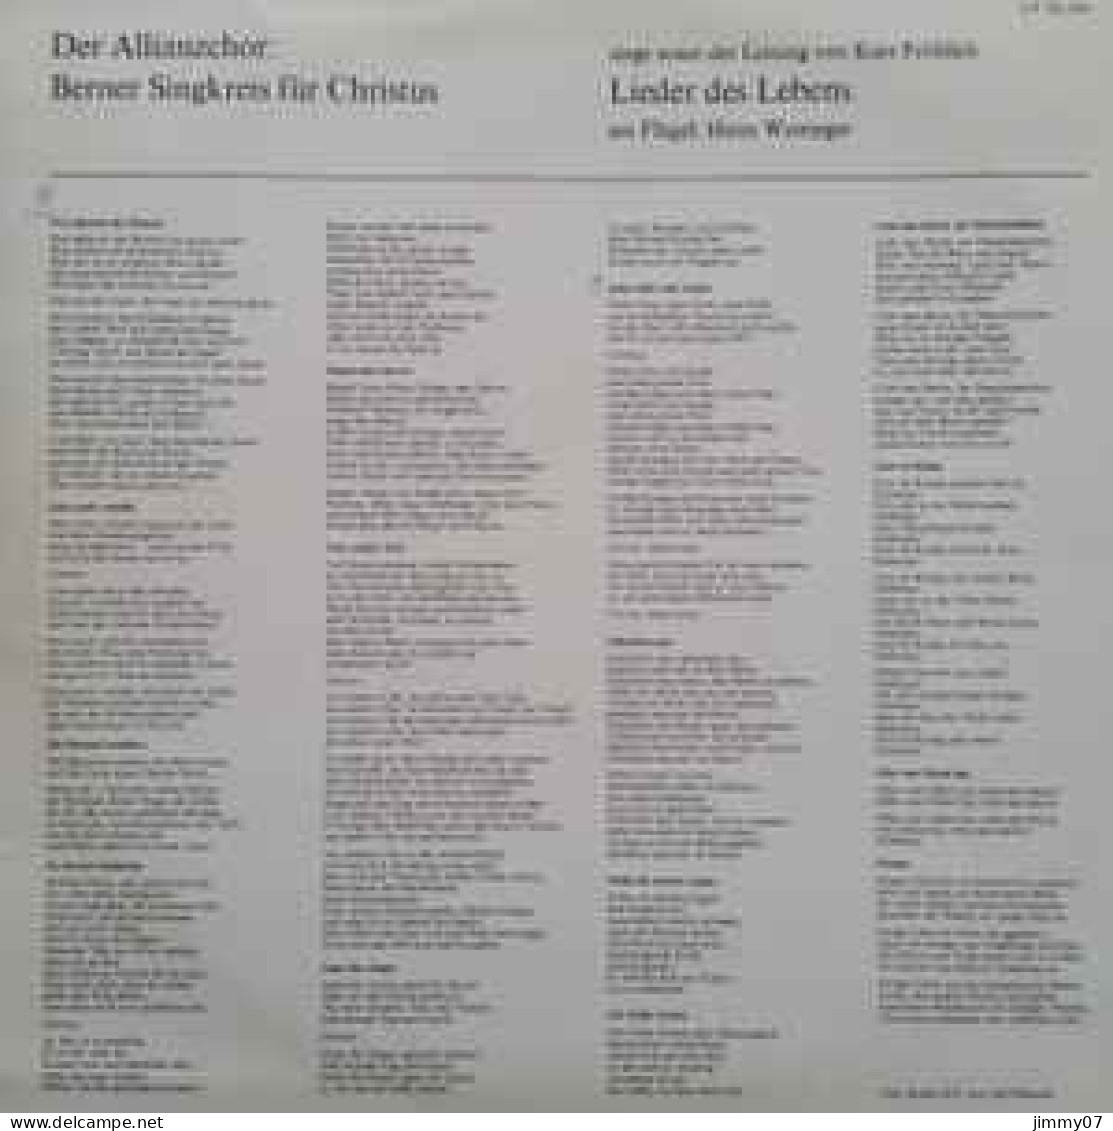 Berner Singkreis Für Christus - Lieder Des Lebens (LP, Album) - Classica